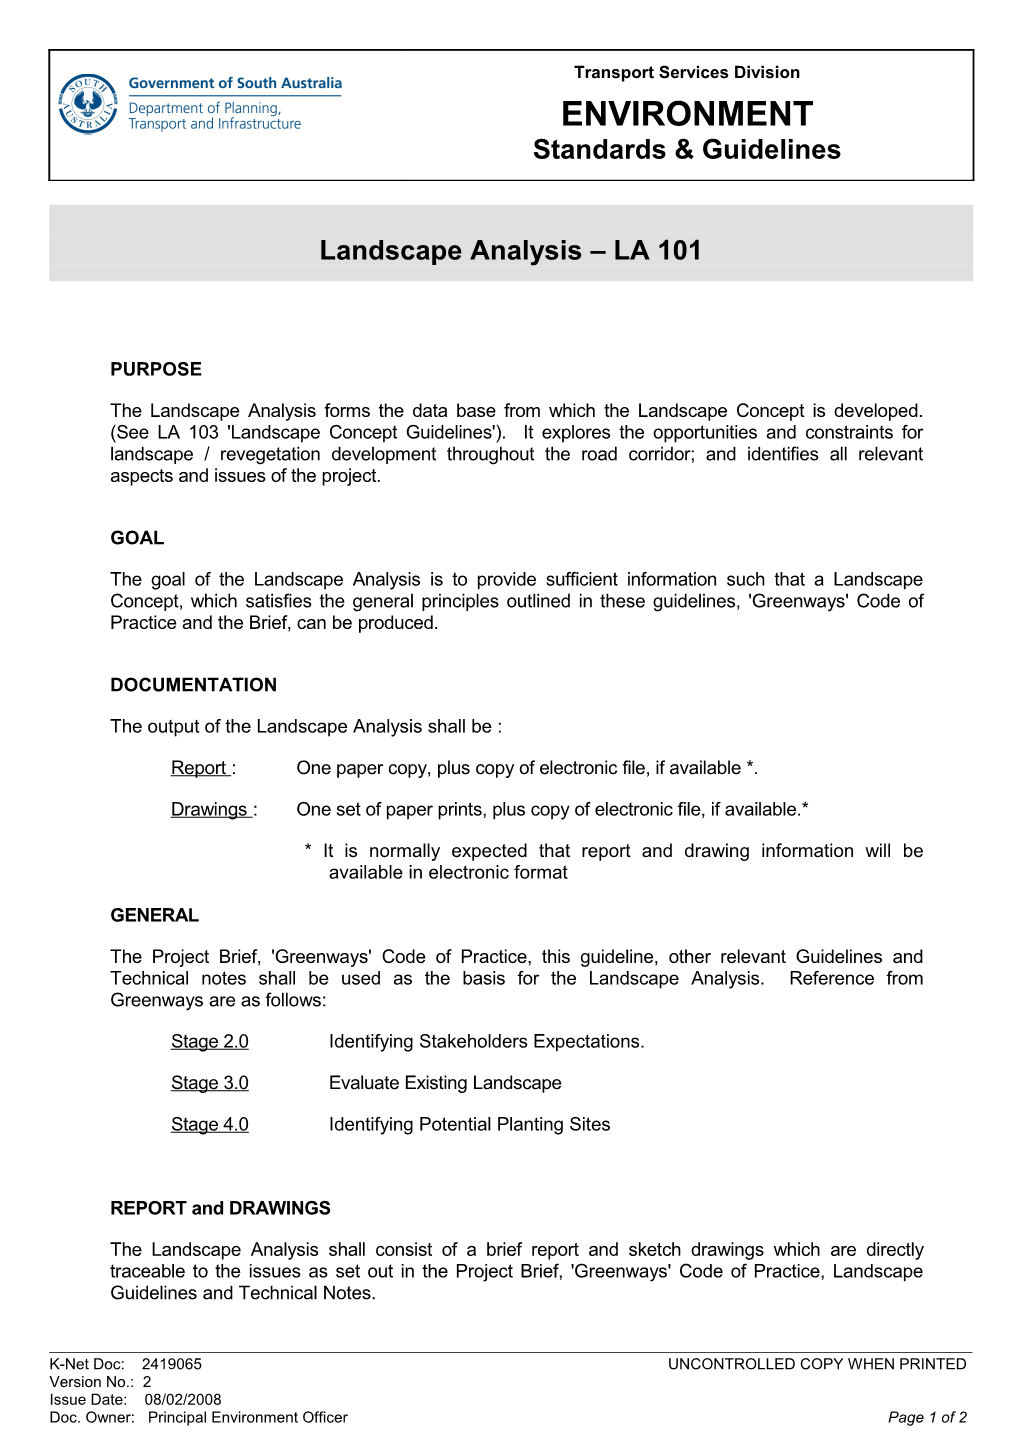 Landscape Analysis LA101